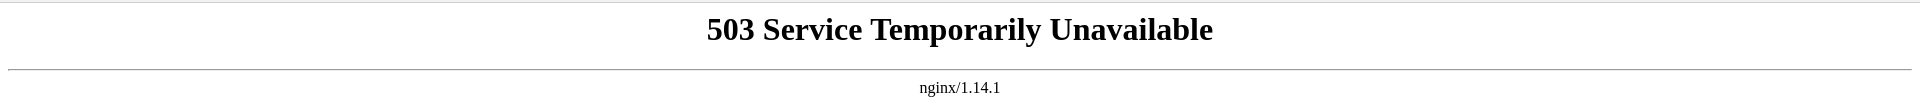 nginx503.png